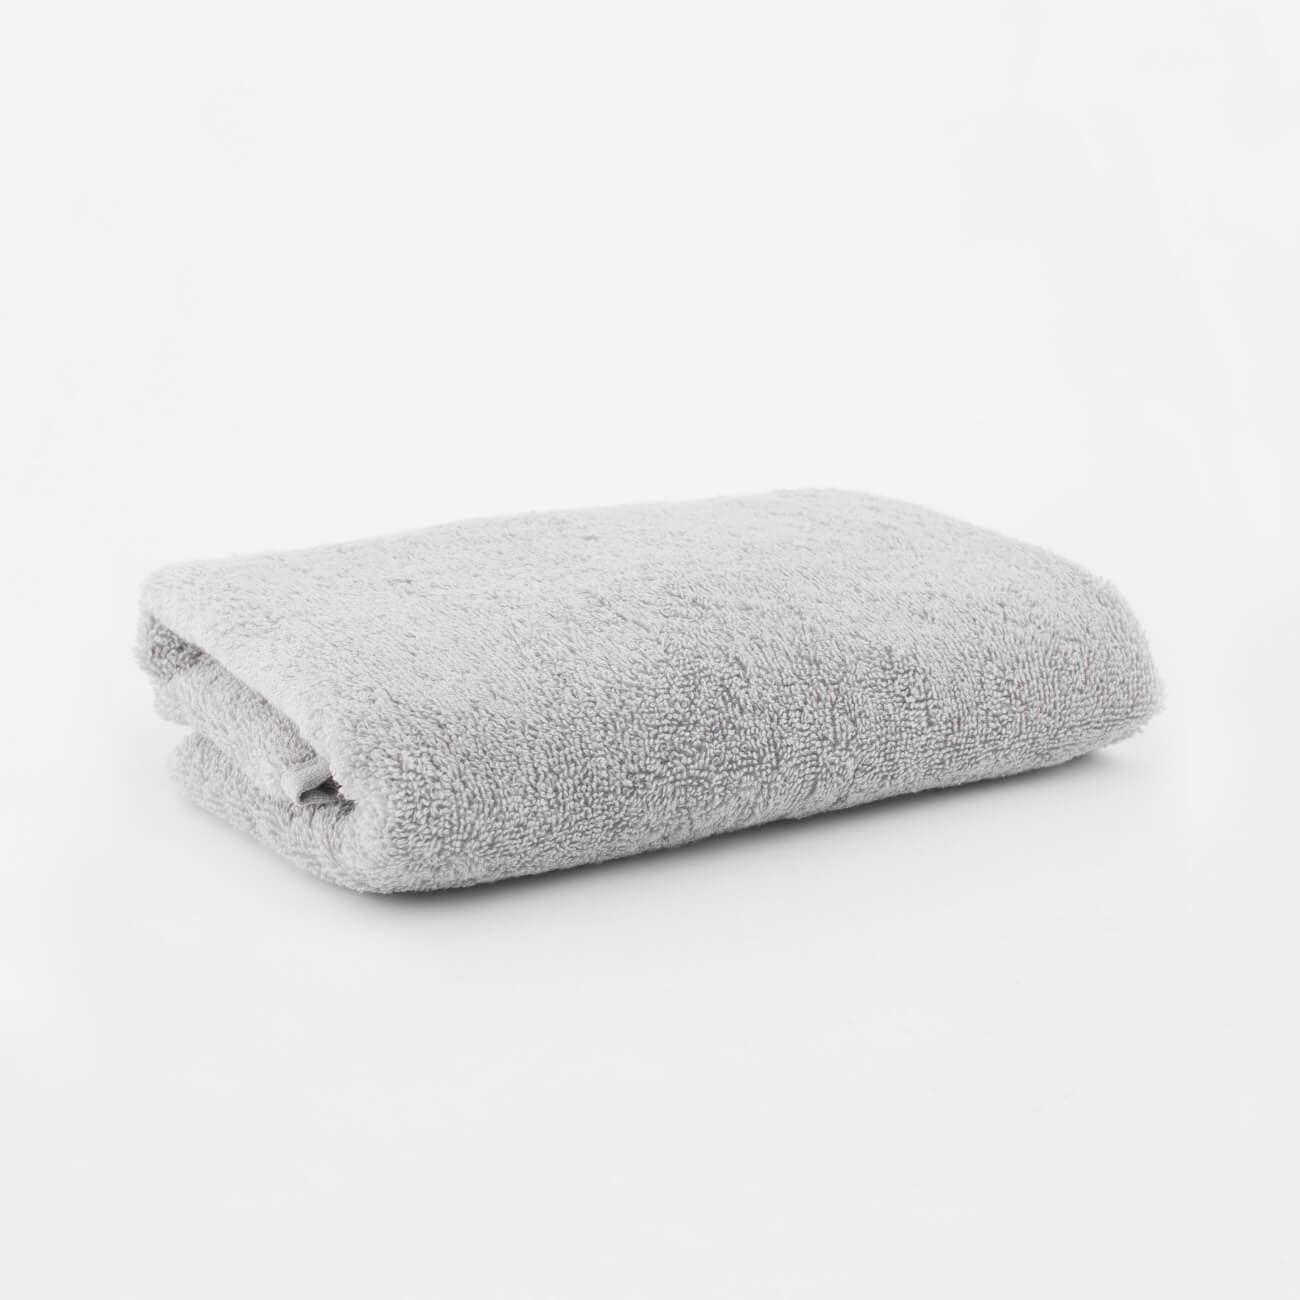 Полотенце, 40х60 см, хлопок, светло-серое, Wellness натуральное бумажное полотенце tork